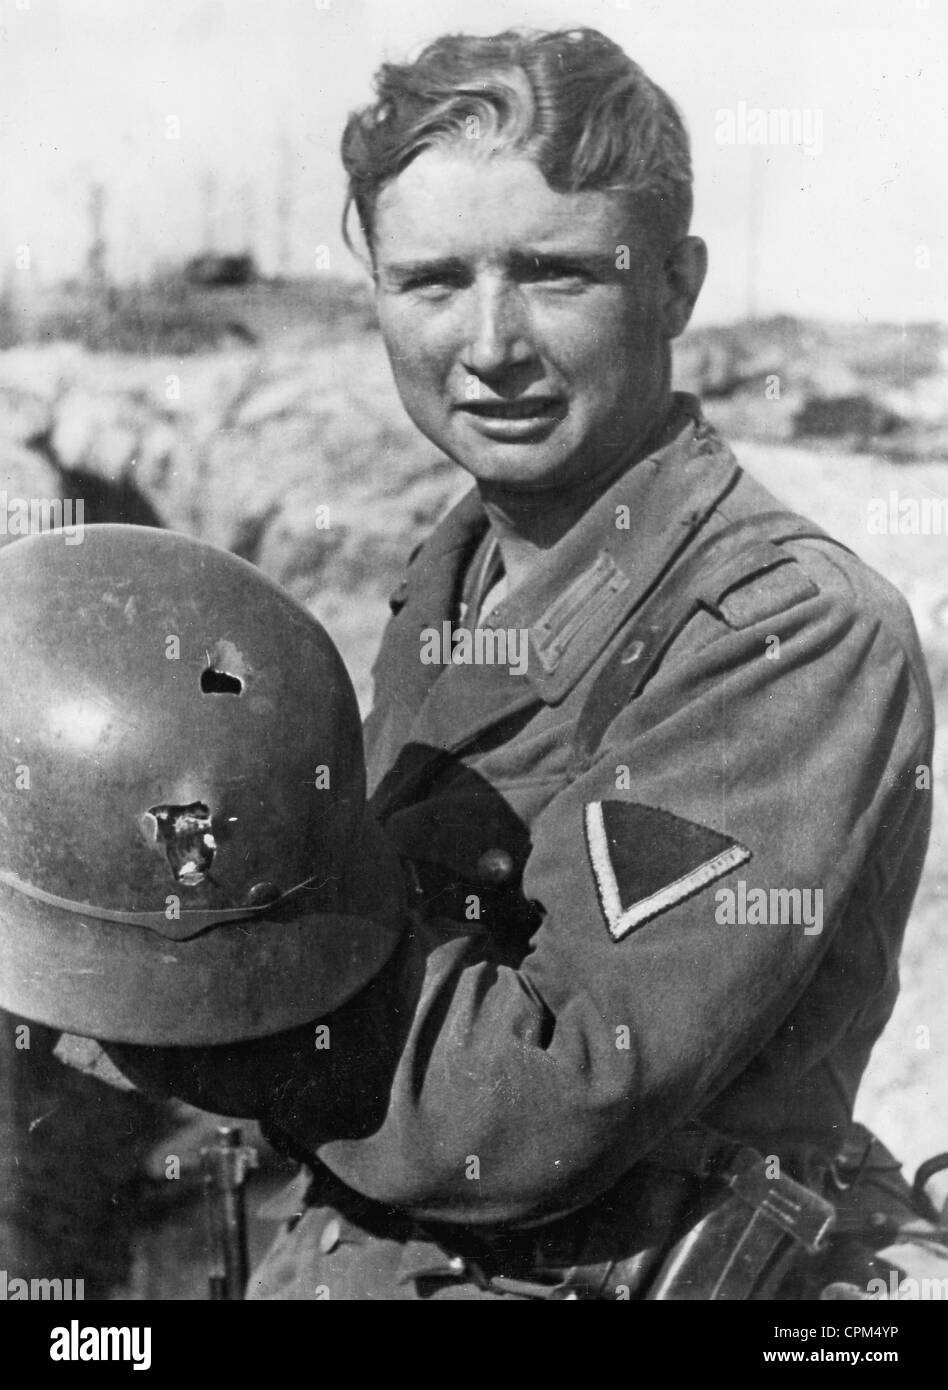 Soldat allemand, 1943 Banque D'Images